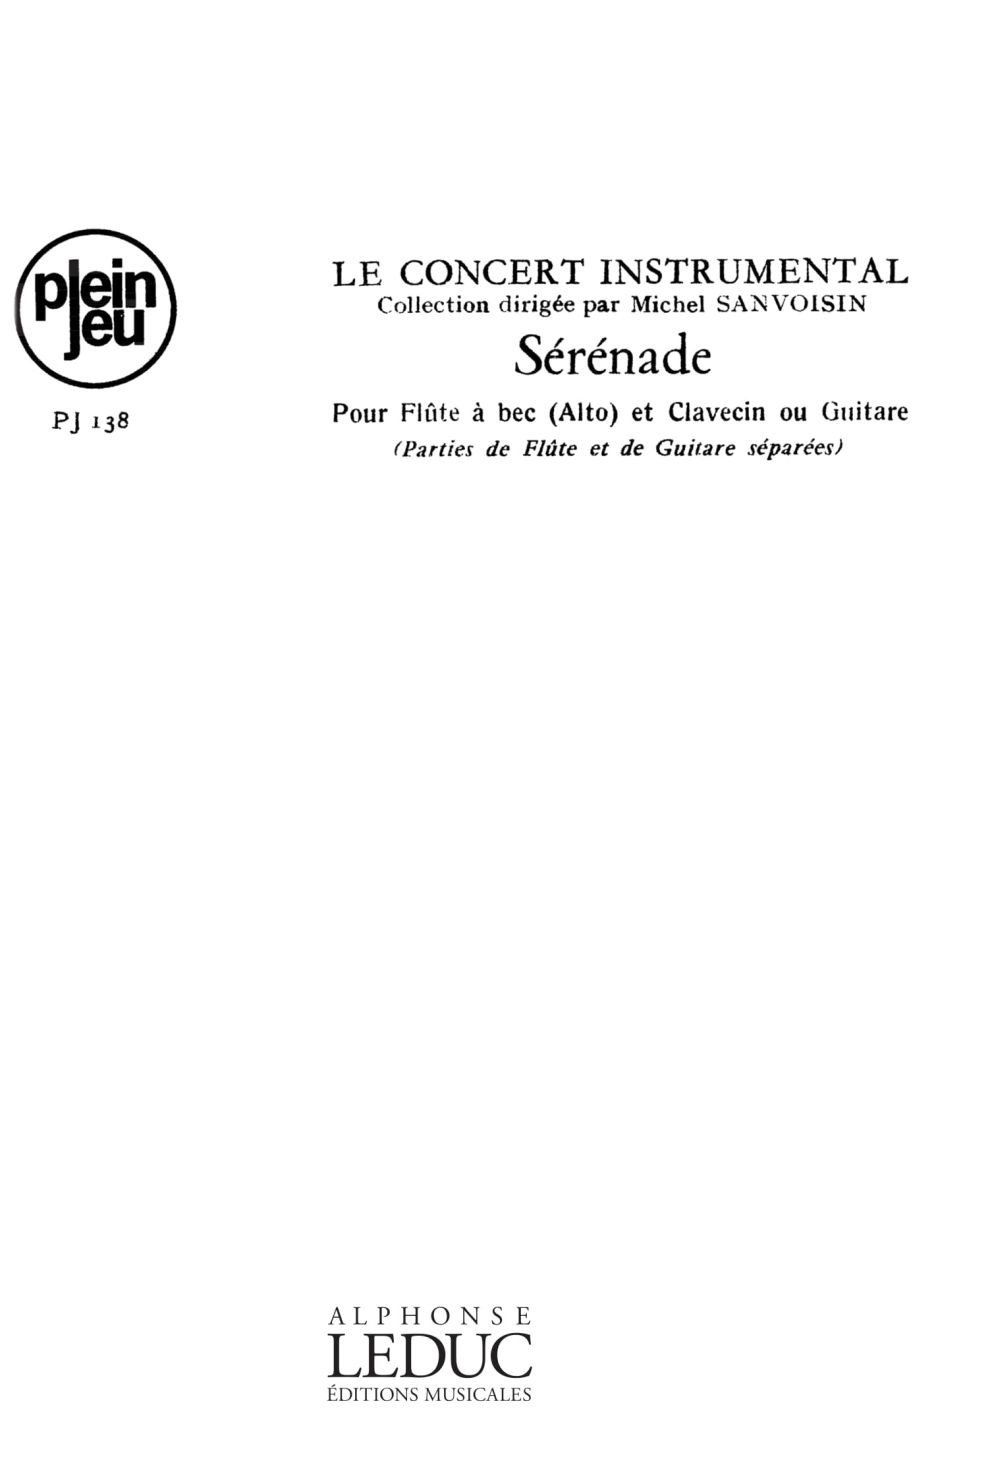 Gaston Saux: Concert Instrumental - Serenade